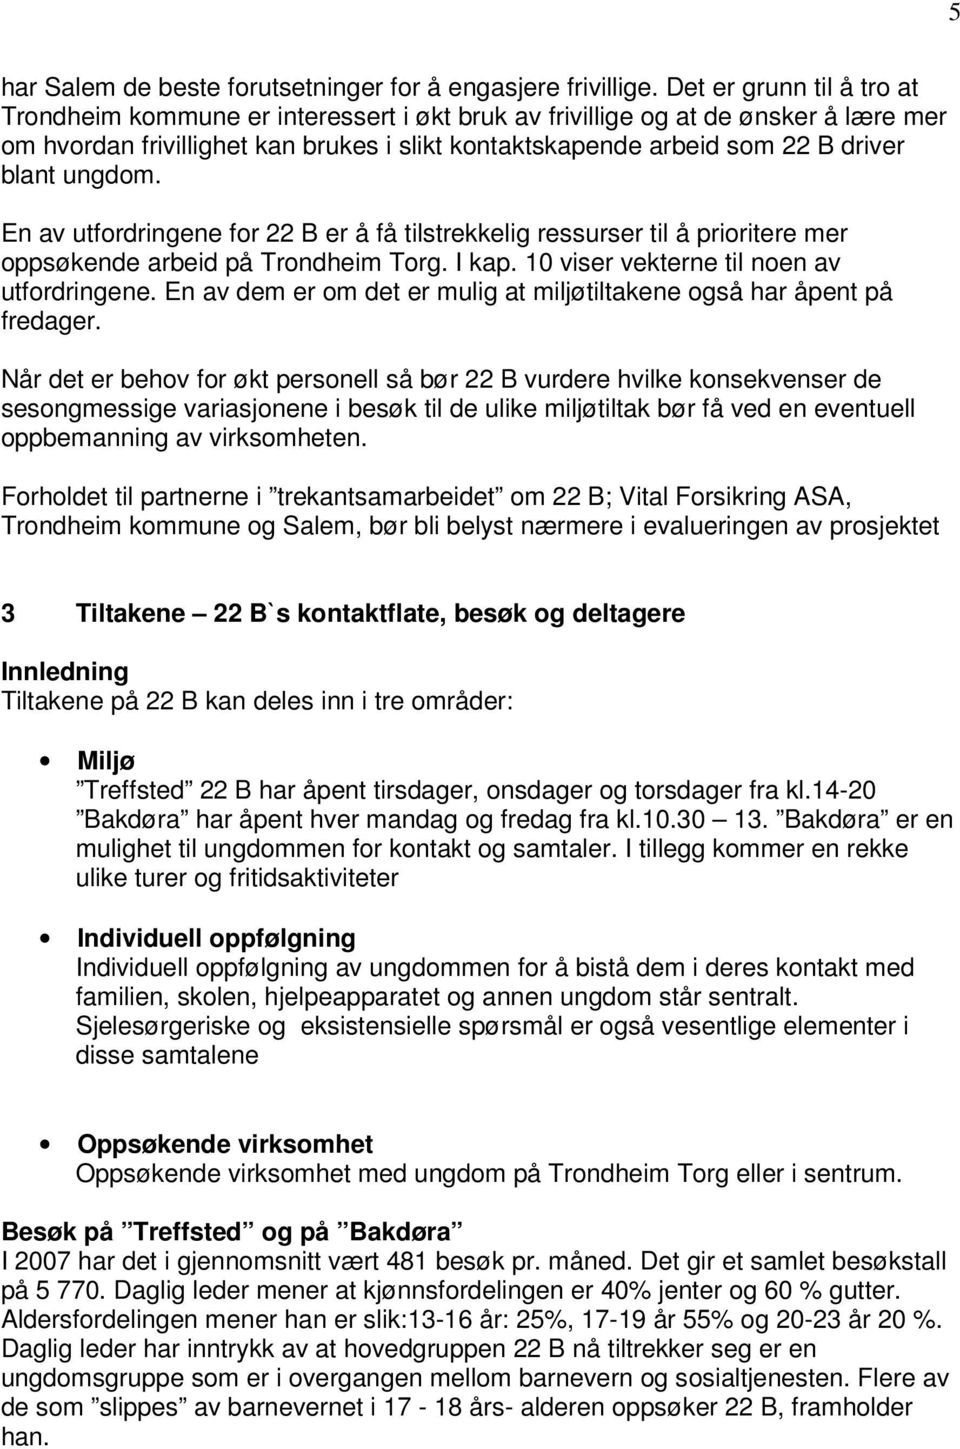 ungdom. En av utfordringene for 22 B er å få tilstrekkelig ressurser til å prioritere mer oppsøkende arbeid på Trondheim Torg. I kap. 10 viser vekterne til noen av utfordringene.